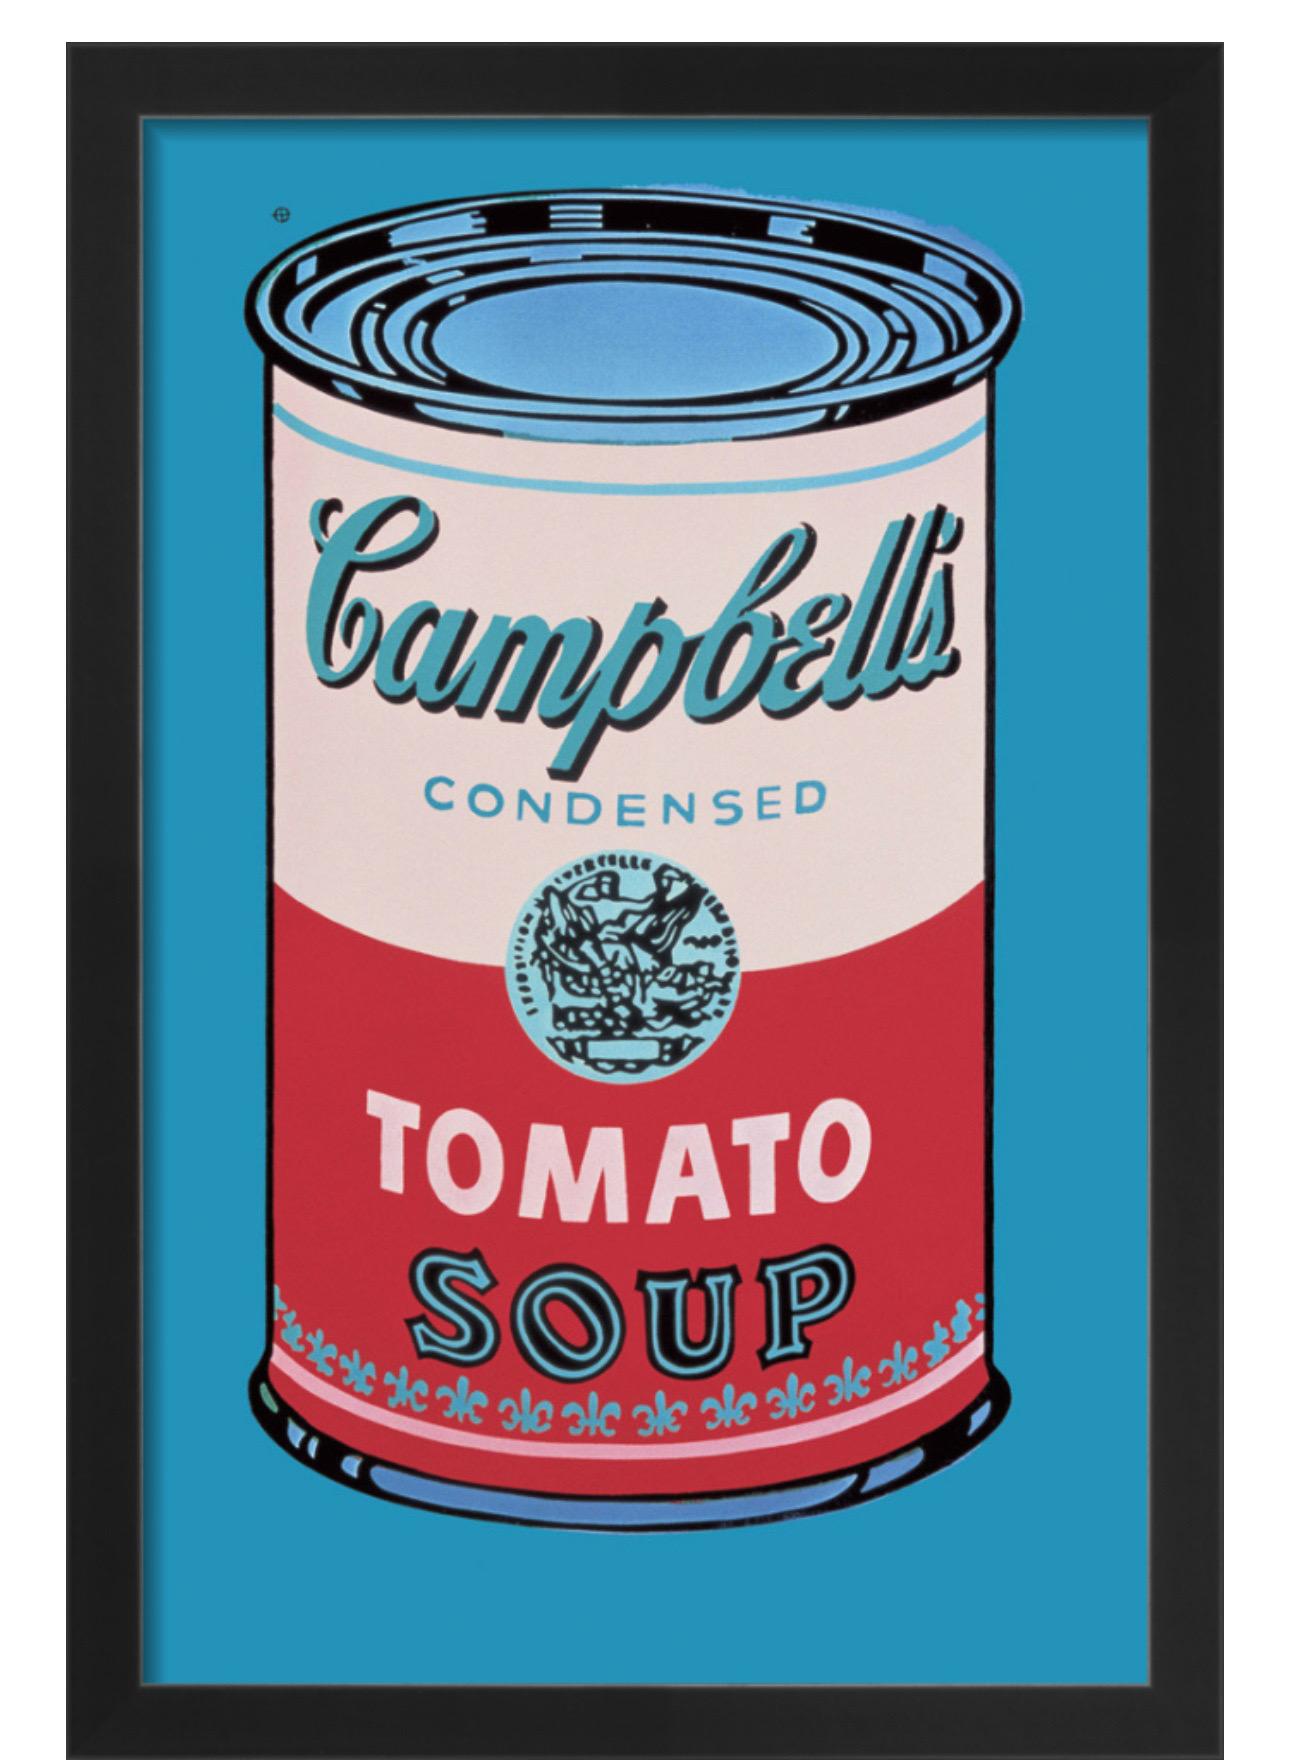 Andy Warhol, Campbell's Soup Can, 1965 (rosa und rot) (gerahmt) 

250gsm gestrichenes grafisches Papier

Papierformat: 33 x 48 cm 
Gerahmte Größe: 36 x 51 cm

In einem mattschwarzen Rahmen aus nachhaltiger Produktion 

Die Campbell's Soup Cans von